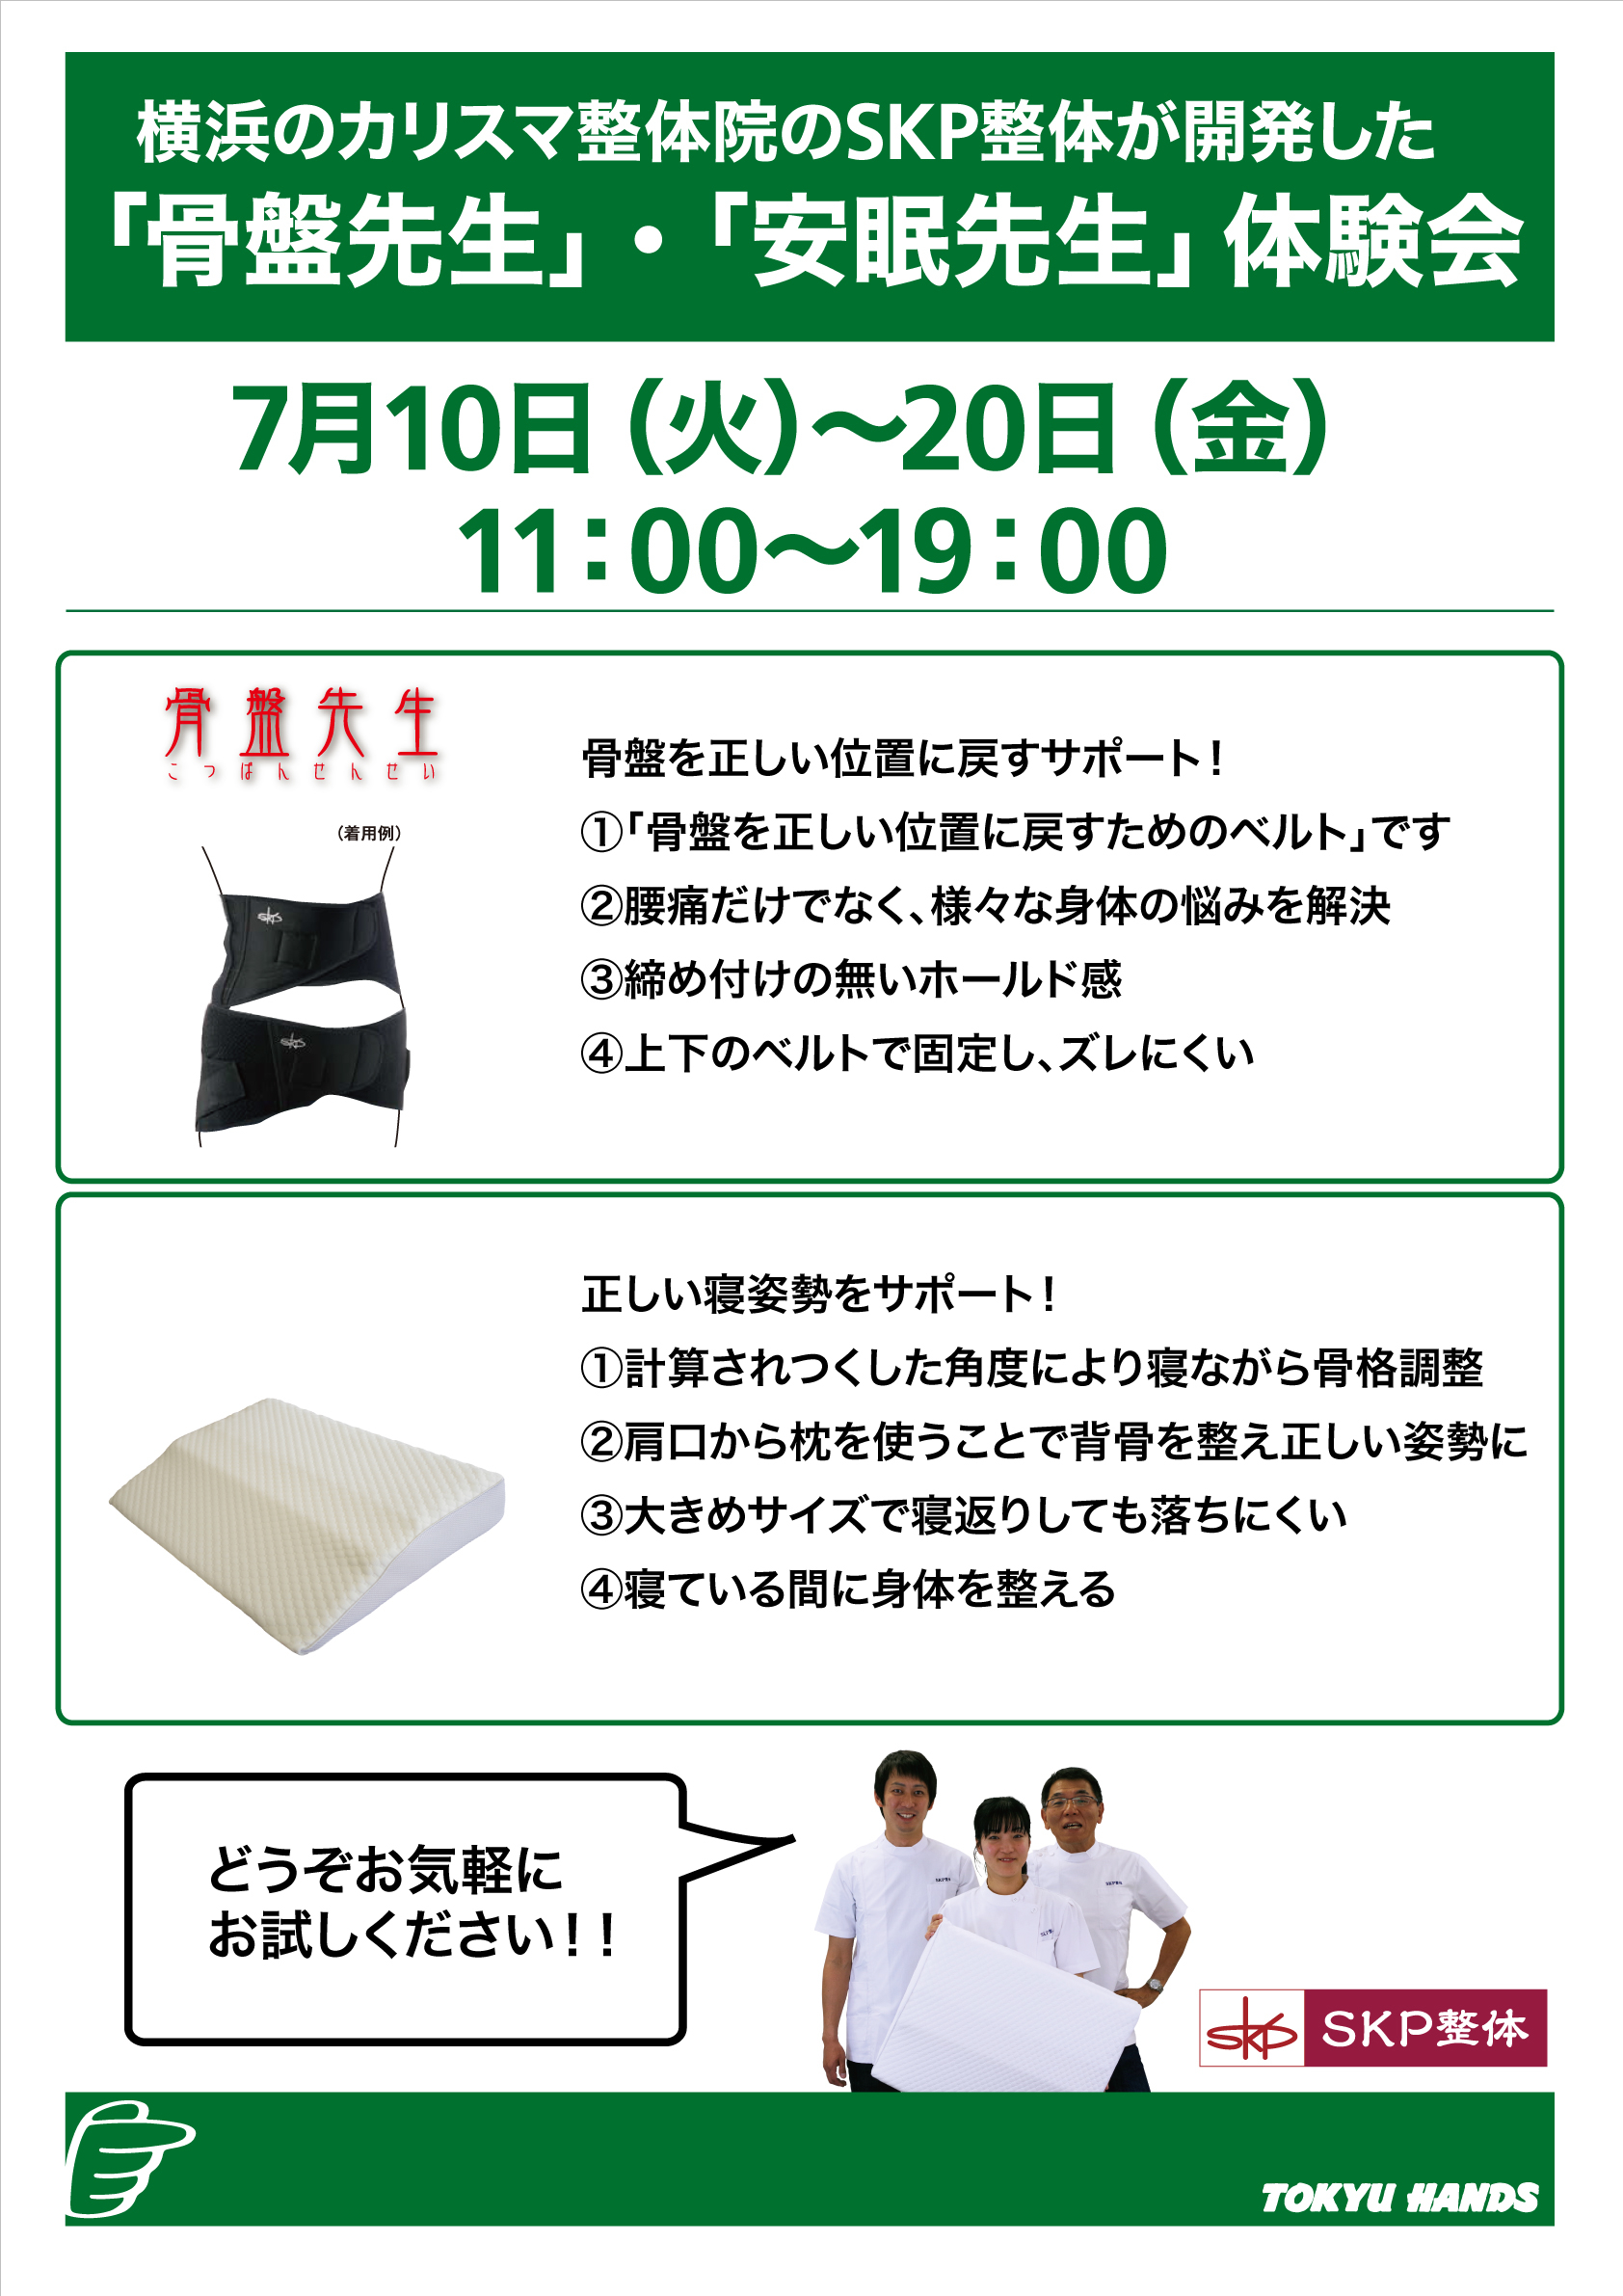 https://shinjuku.tokyu-hands.co.jp/item/793a8f97a0b27250bb327fb681378424e190767c.jpg